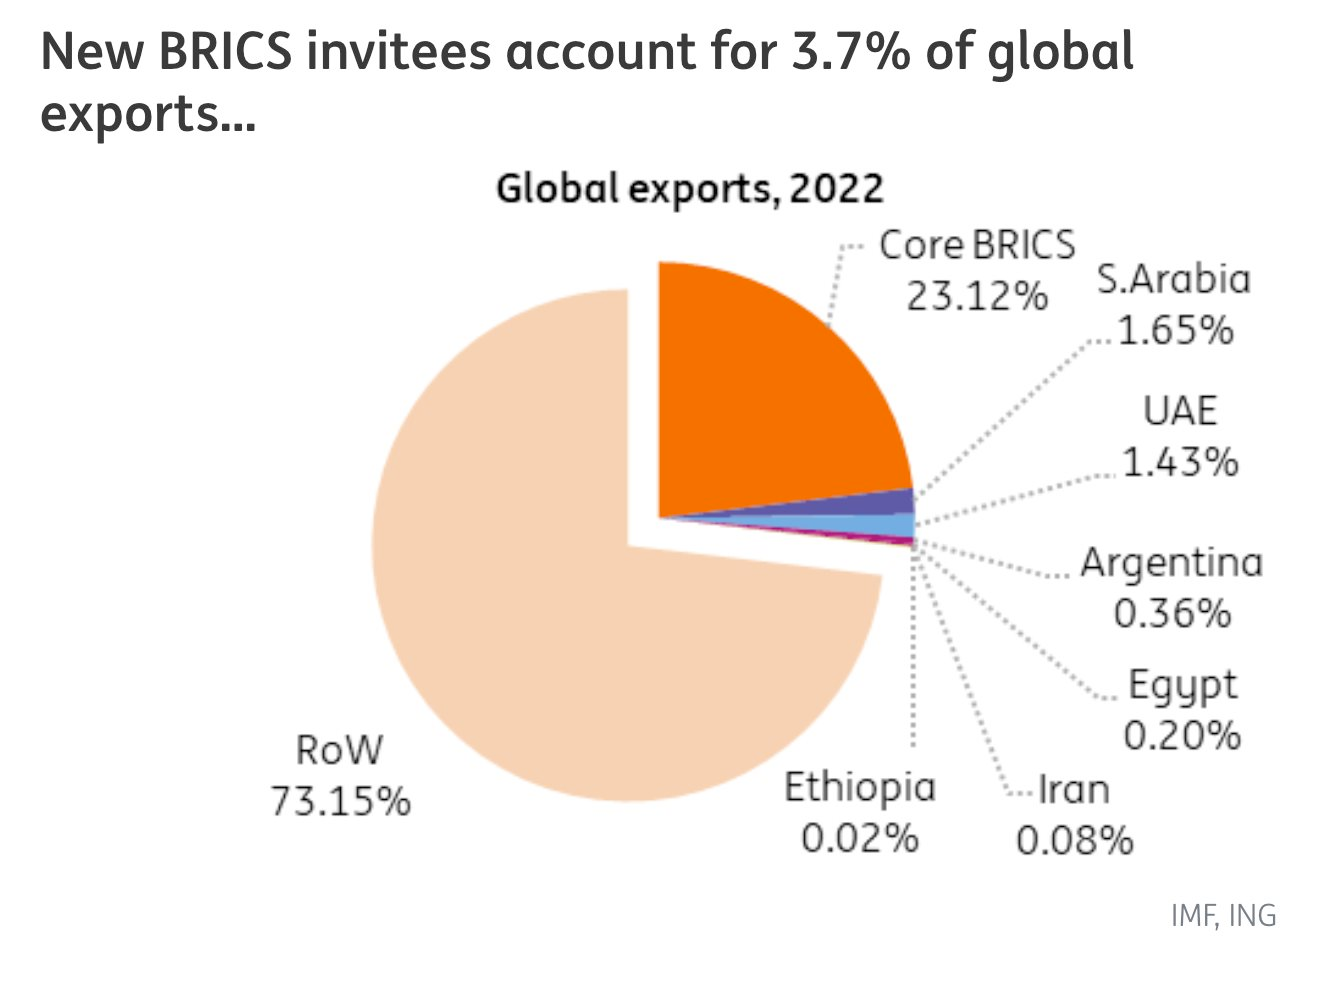 Đã có Nga, BRICS vẫn quyết định áp dụng ‘chiến lược 1+3’, dự kiến đủ sức mạnh nắm trong tay quyền kiểm soát thị trường ‘vàng đen’ toàn cầu - Ảnh 2.